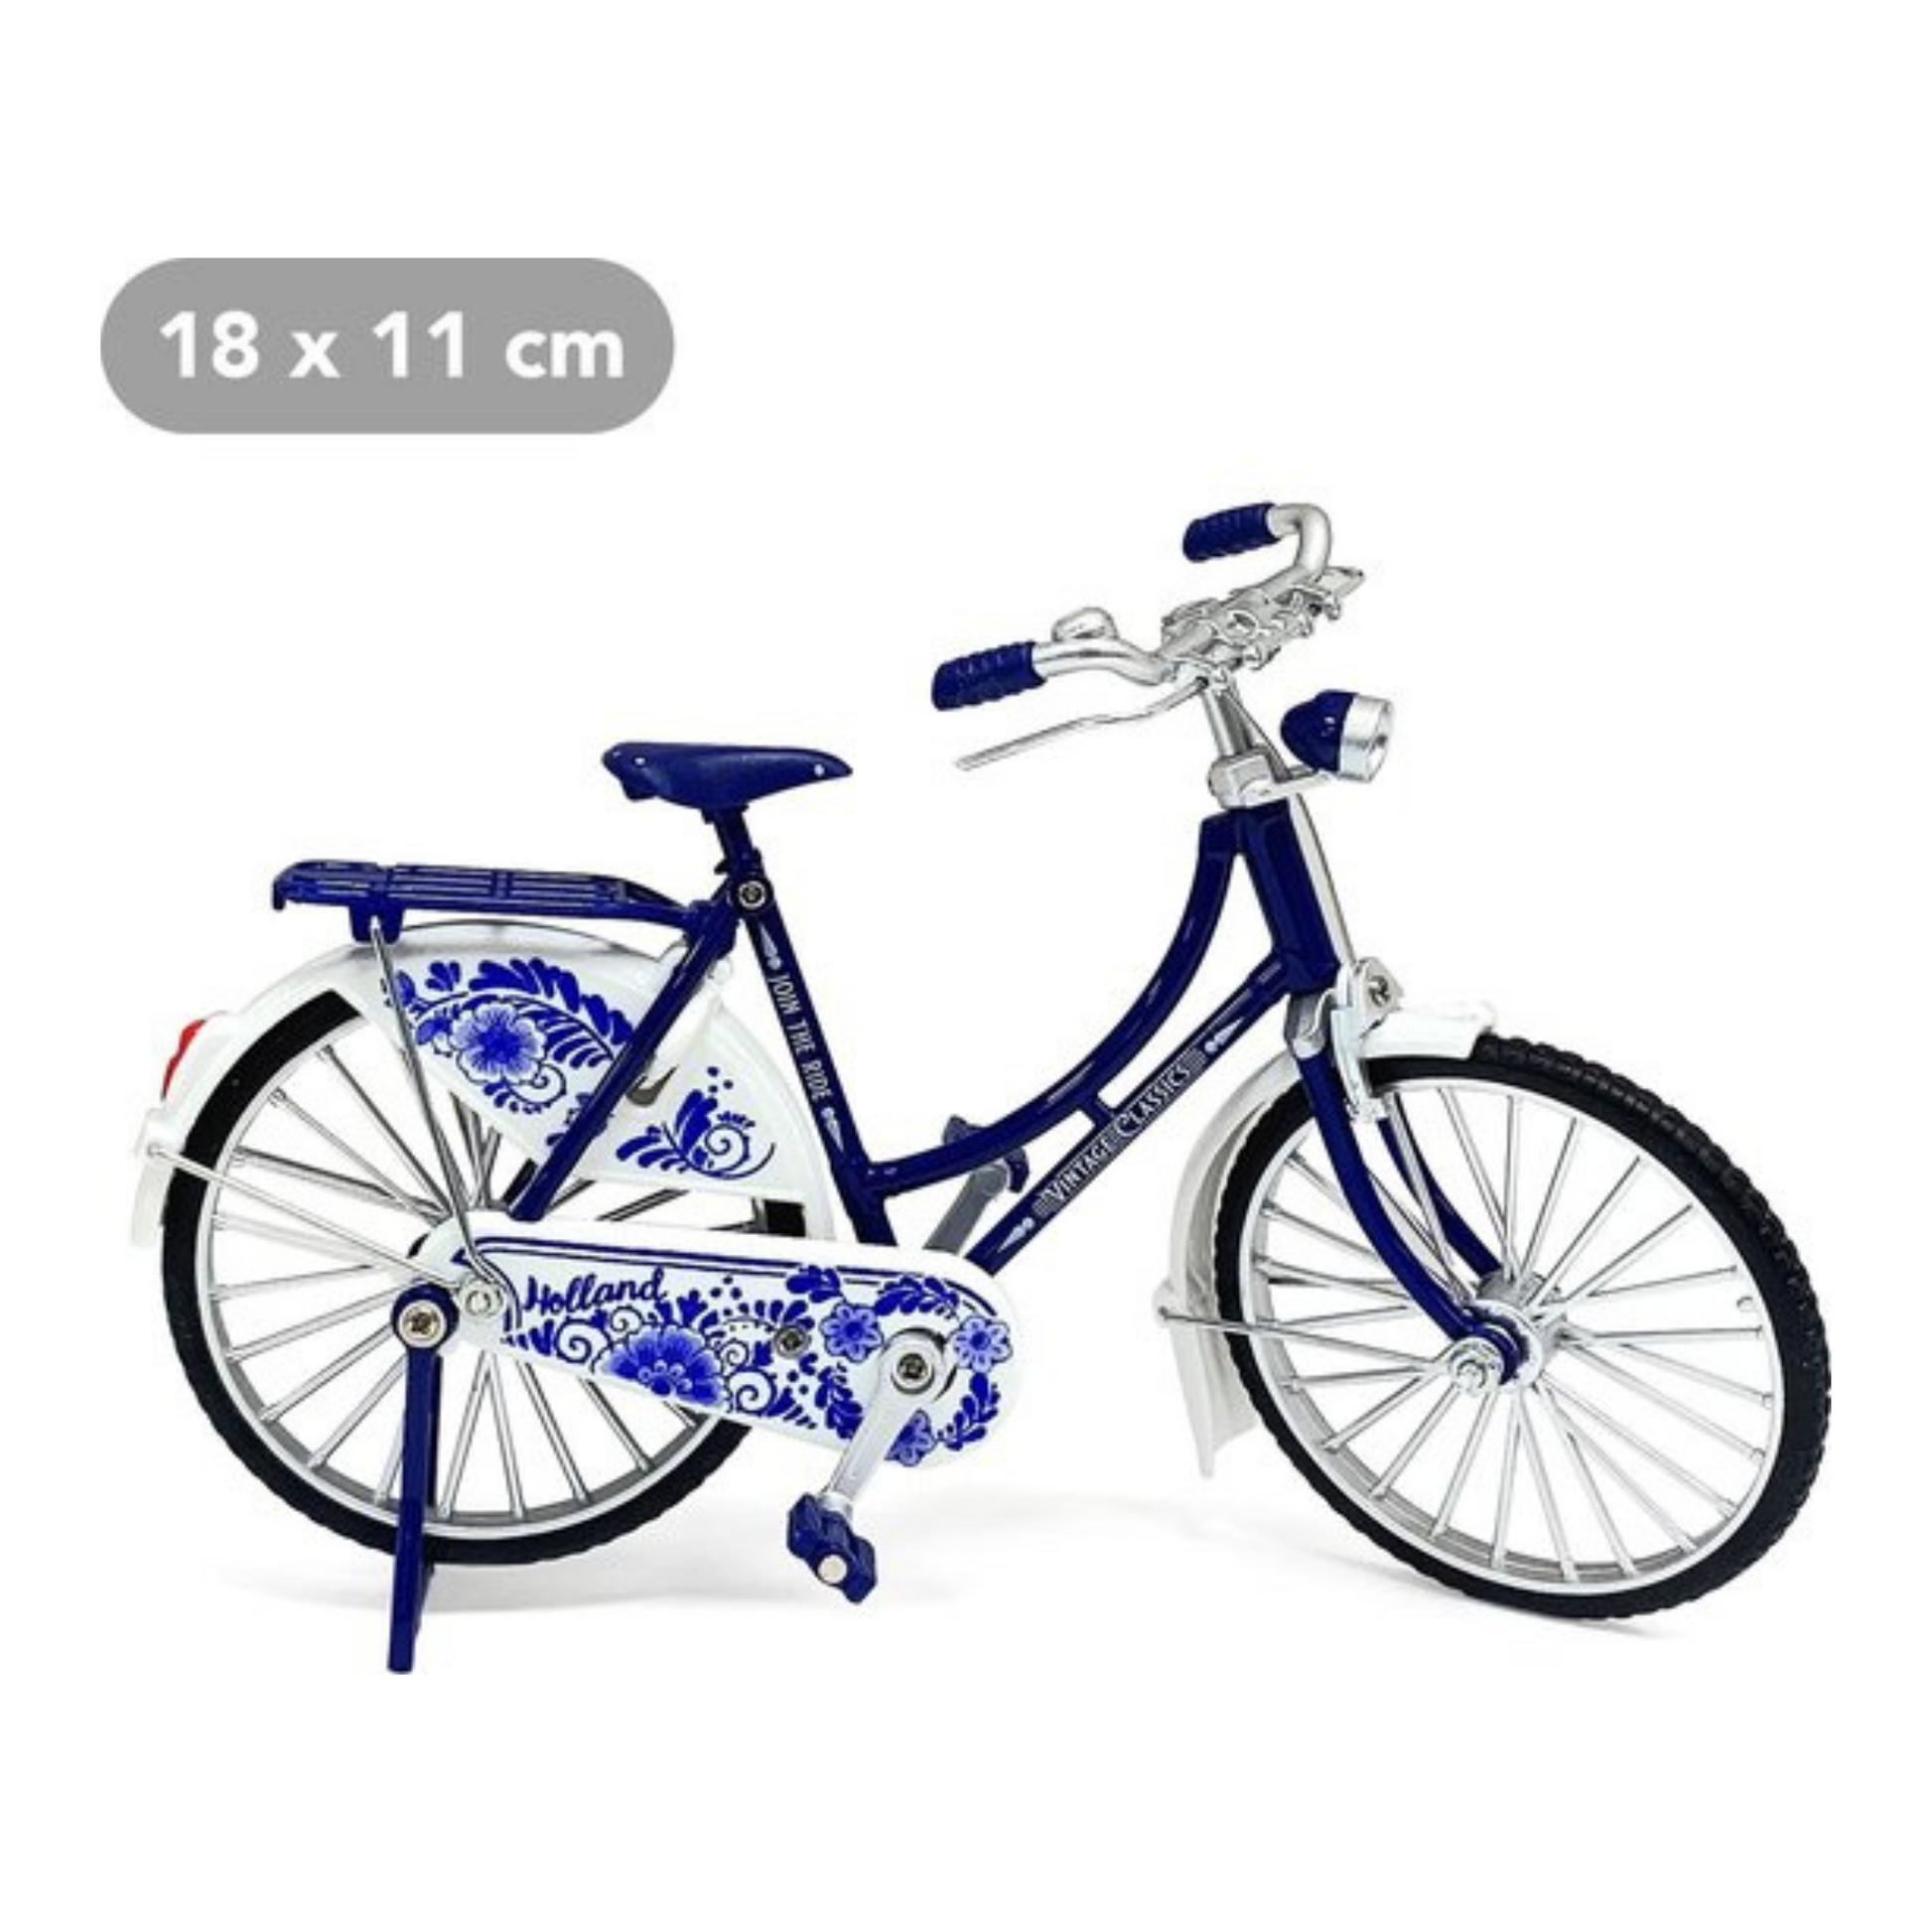 delfts blauw fiets holland bloemen souvenir oma fiets miniatuur Deze mini oma fiets is een origineel en leuk souvenir-idee voor de Holland-liefhebber! Het is een origineel cadeau voor iemand die graag fietst, of voor iemand die van Nederland houdt. Dit kleine fietsje is een leuk aandenken aan je tijd in ons mooie land.